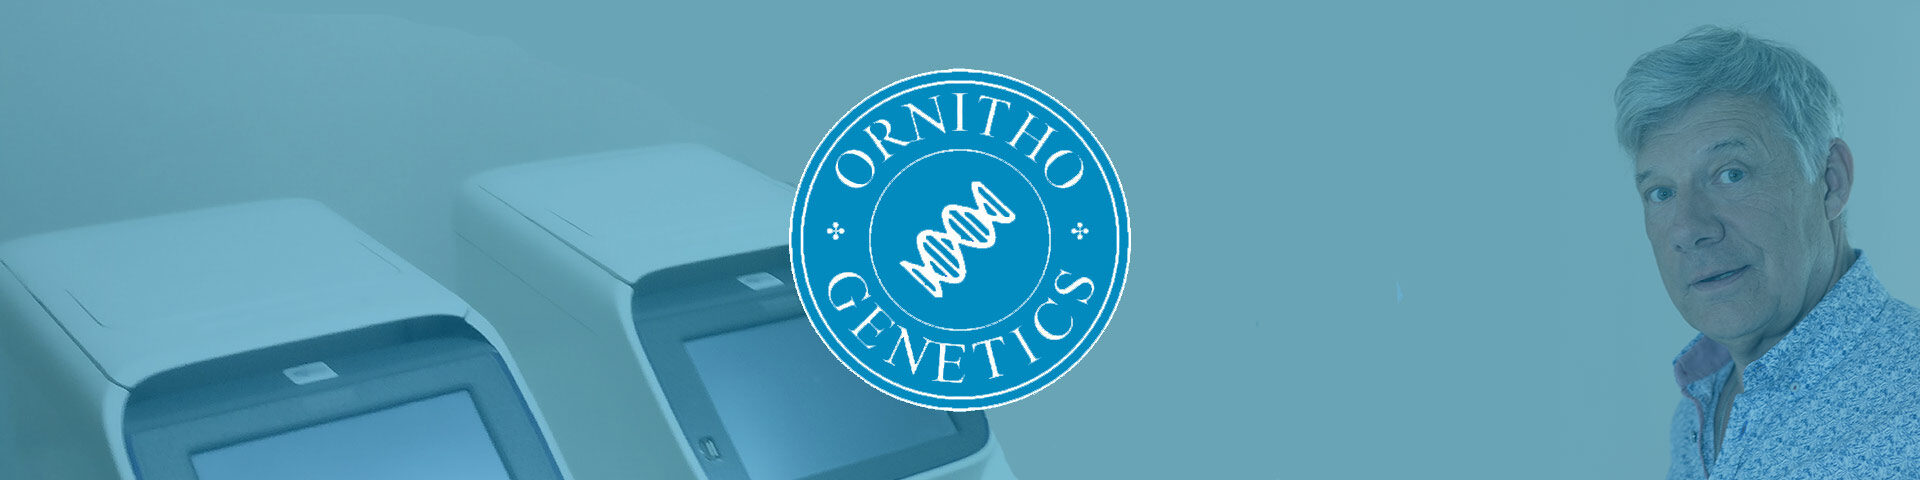 Ornitho-Genetics VZW